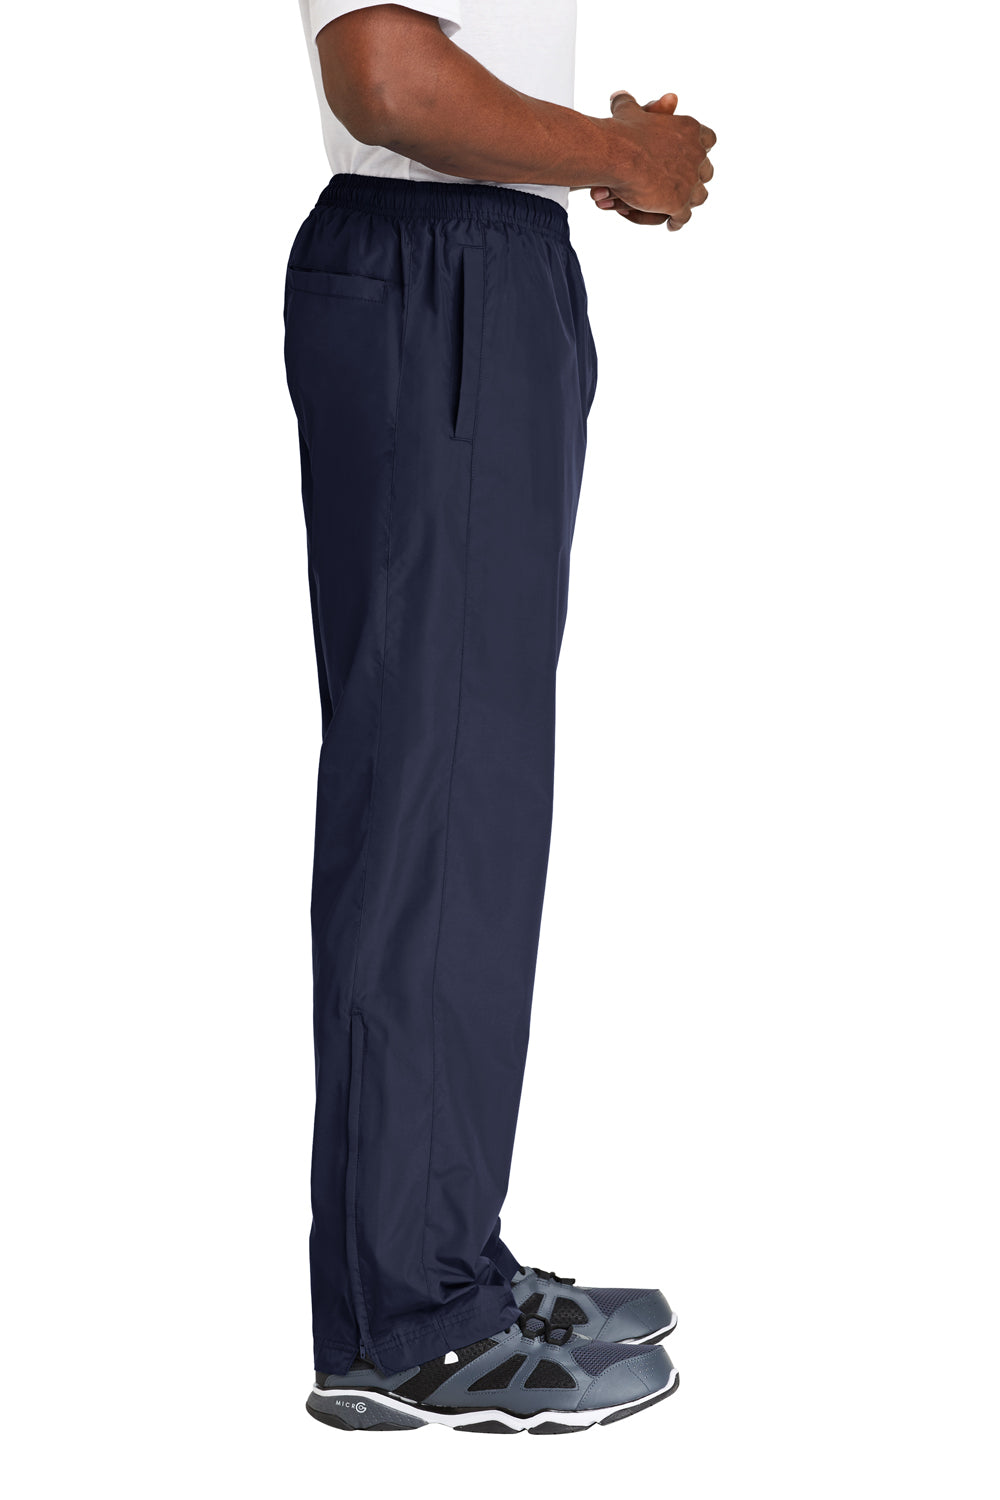 Sport-Tek PST74 Wind Pants w/ Pockets True Navy Blue Side